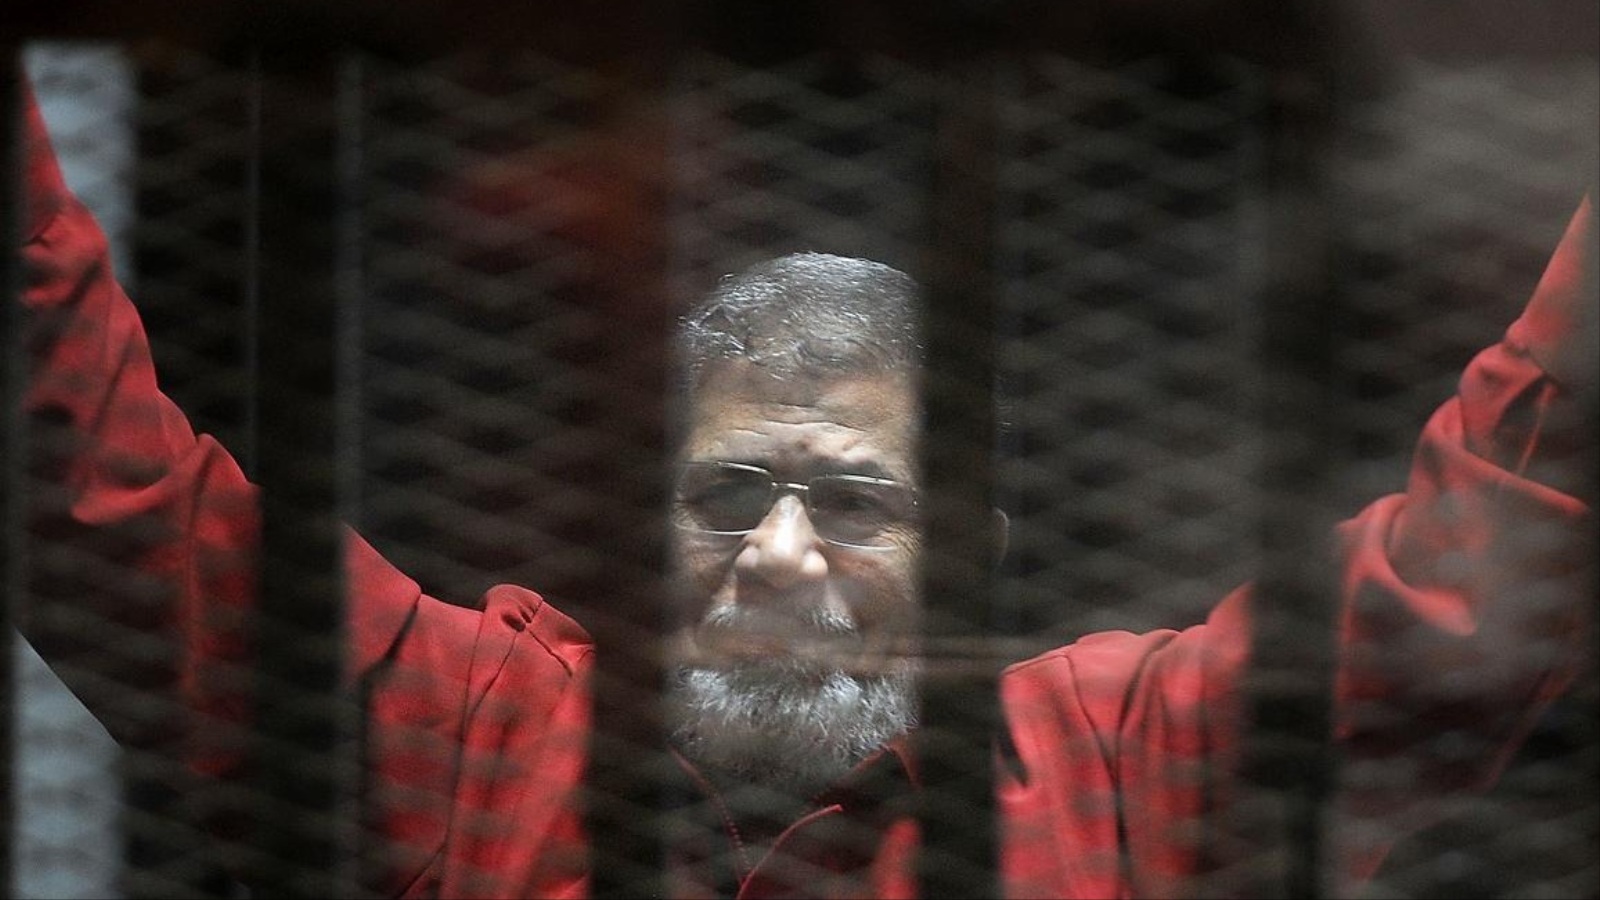 ‪مرسي وراء القضبان بعد إطاحته من السلطة في انقلاب عسكري‬ مرسي وراء القضبان بعد إطاحته من السلطة في انقلاب عسكري (الأناضول)